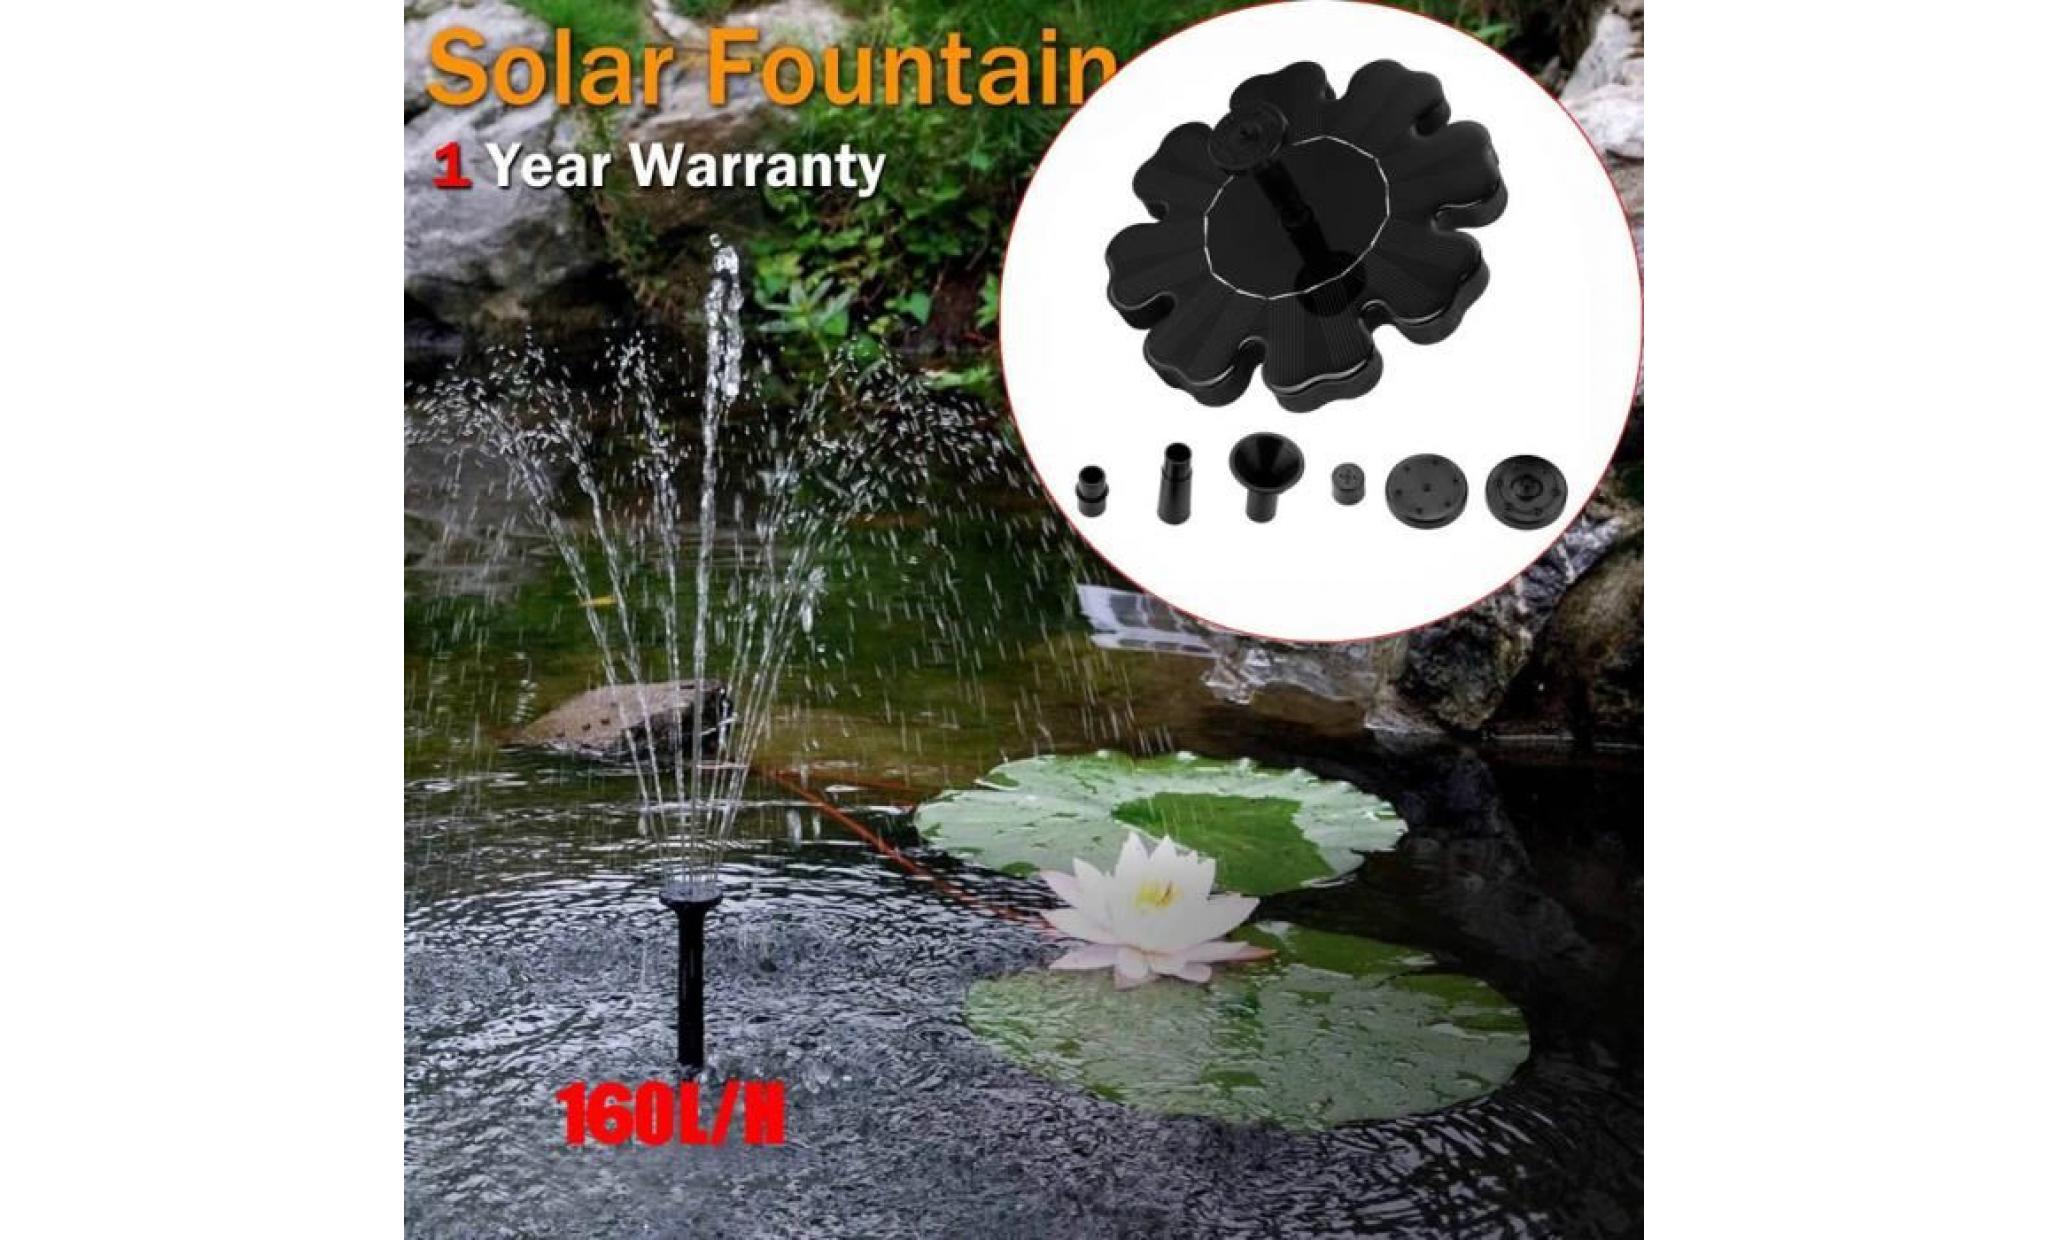 poi@ extérieur à énergie solaire oiseaux bain d'eau fontaine pompe pour piscine, jardin, aquarium noir_35